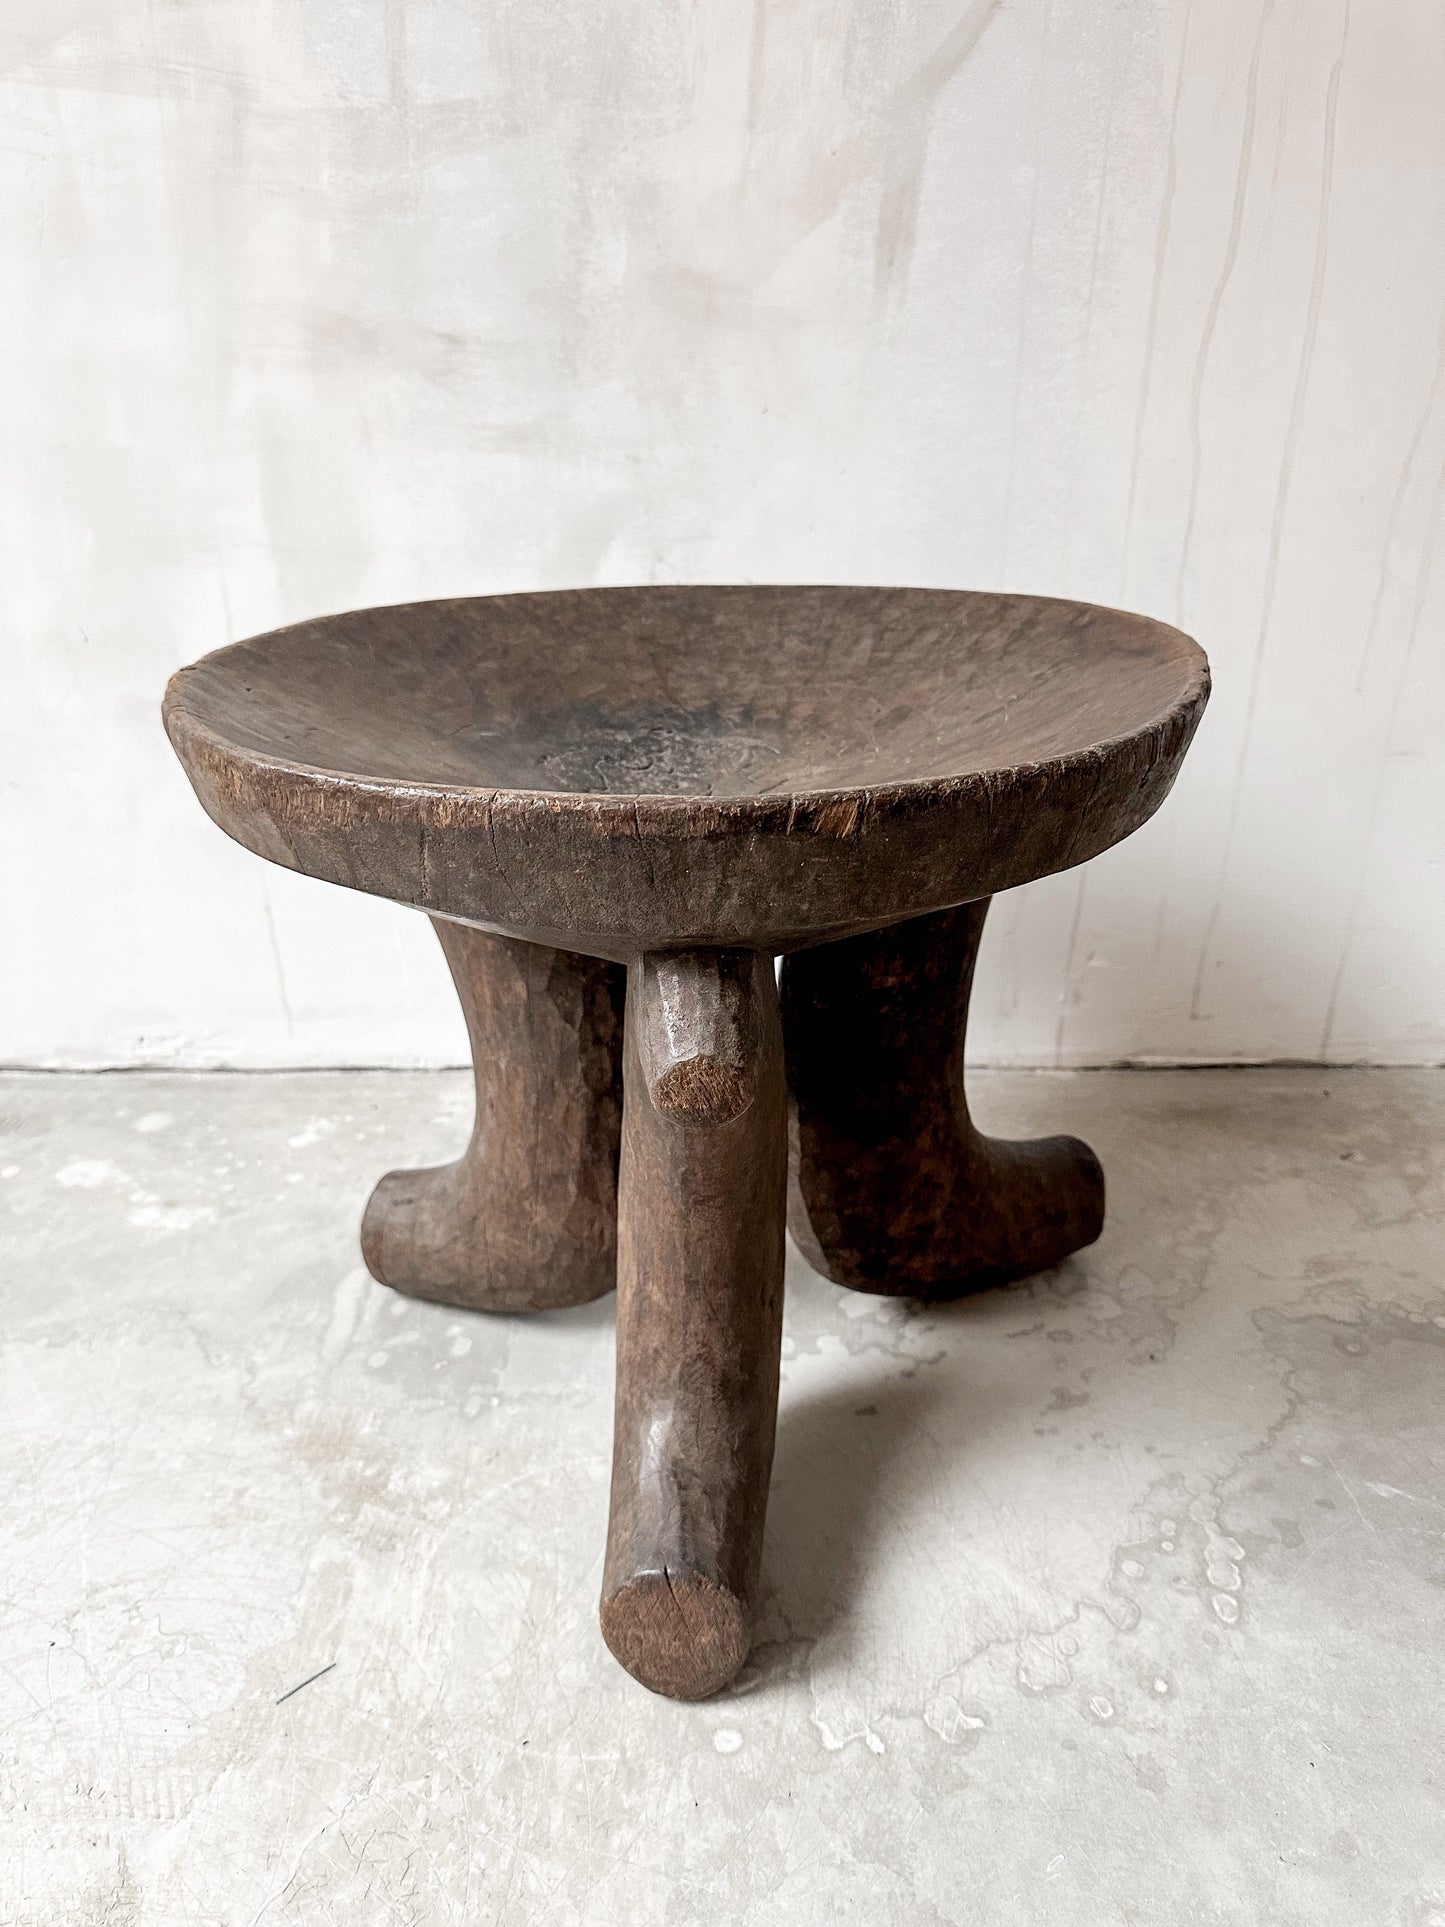 old Oromo stool #4